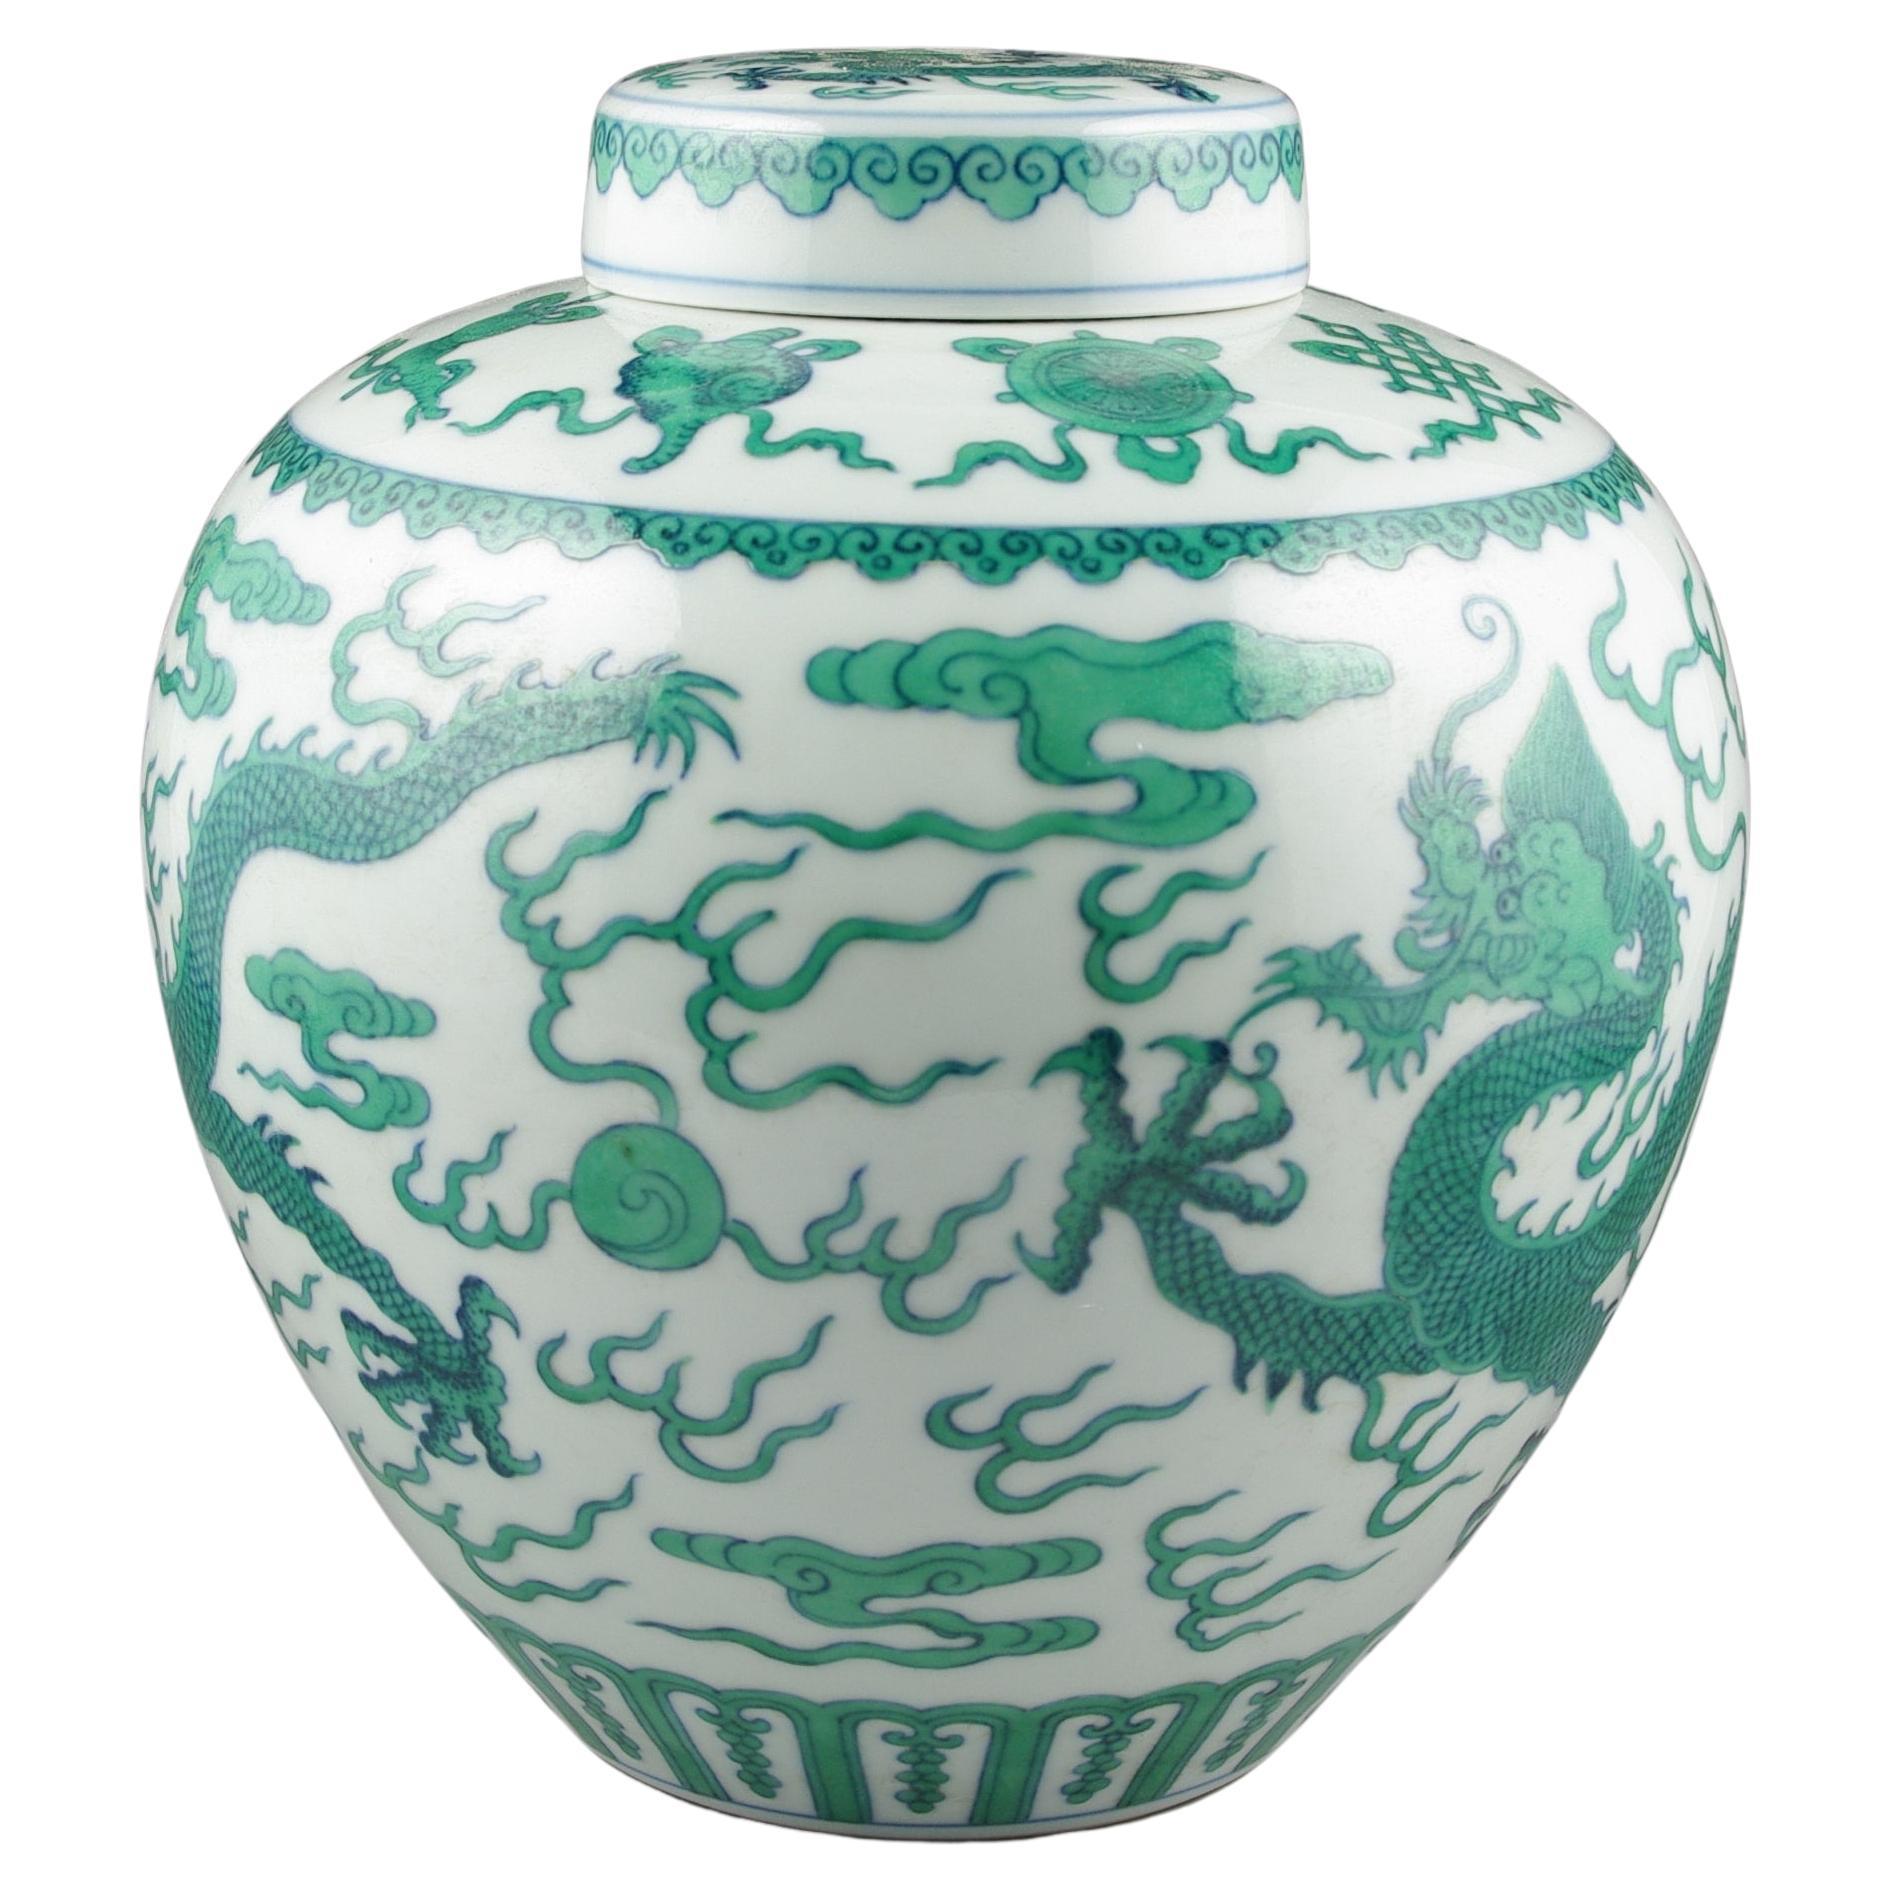 Wir freuen uns, dieses exquisite, mit chinesischem Porzellan überzogene Ingwerglas präsentieren zu können, ein Stück, das den Gipfel der Handwerkskunst und der künstlerischen Exzellenz verkörpert. Das Gefäß besticht durch die lebendige Darstellung